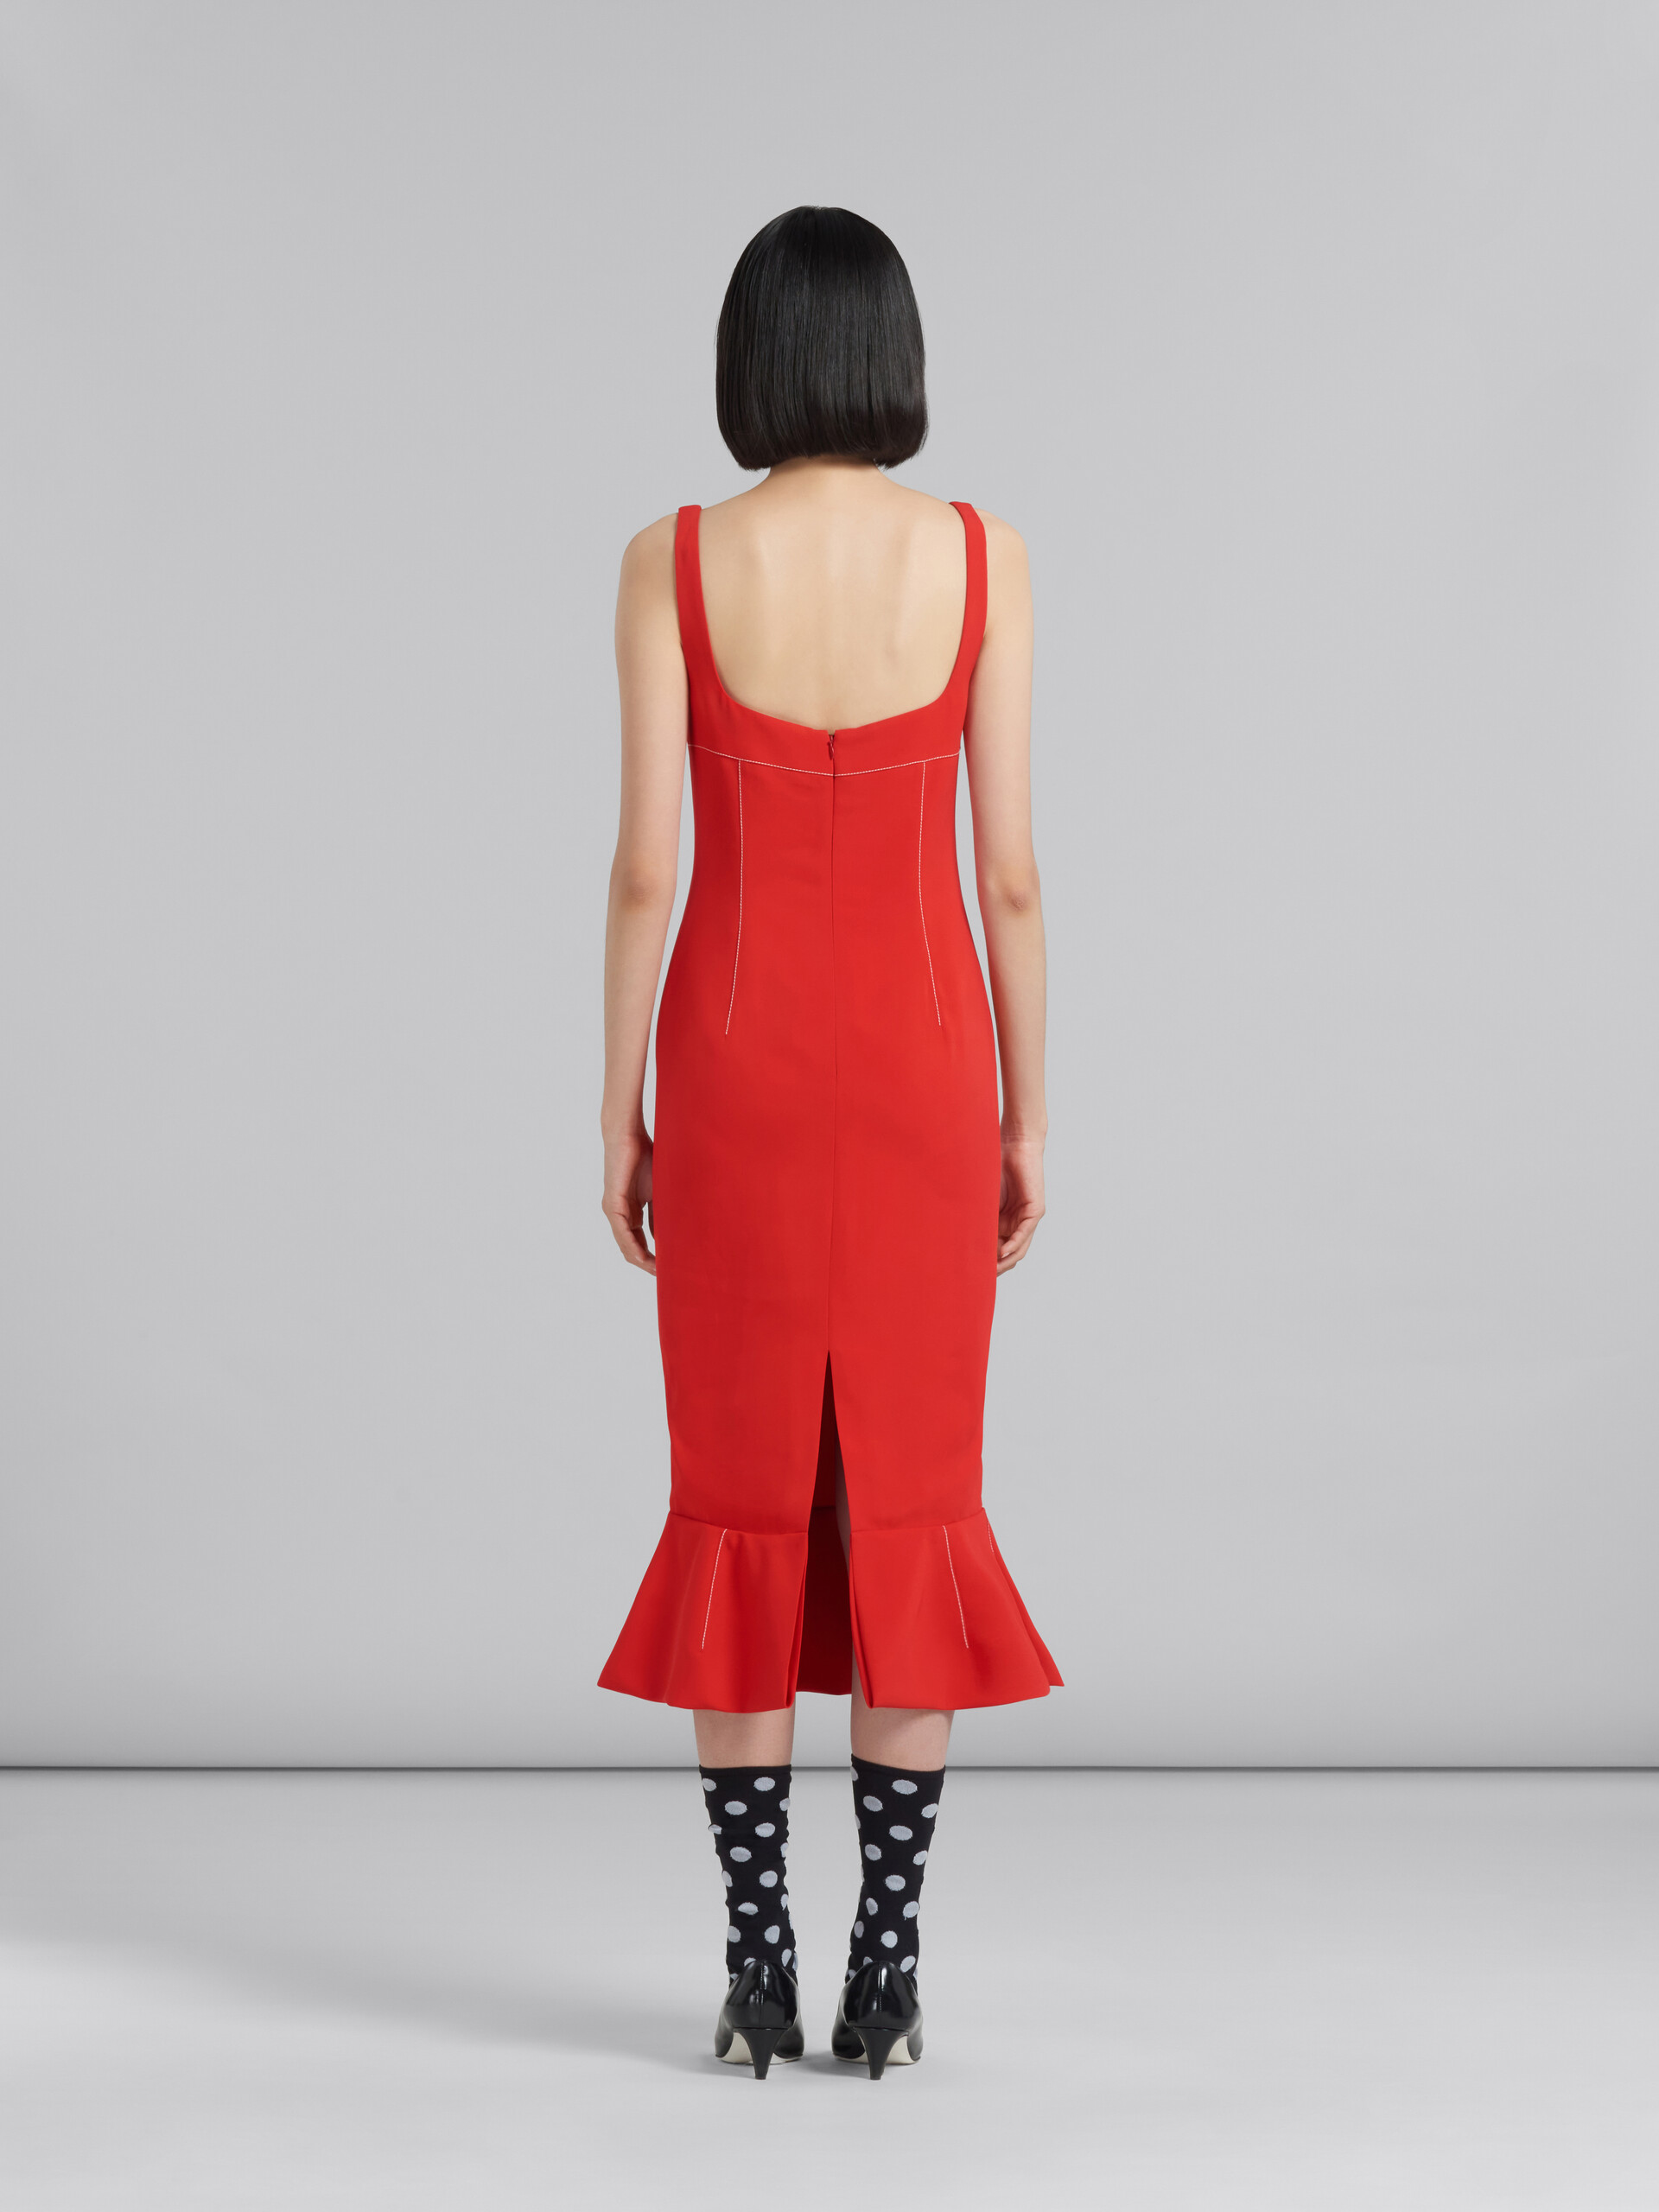 Red cady sheath dress with flounce hem - Dresses - Image 3